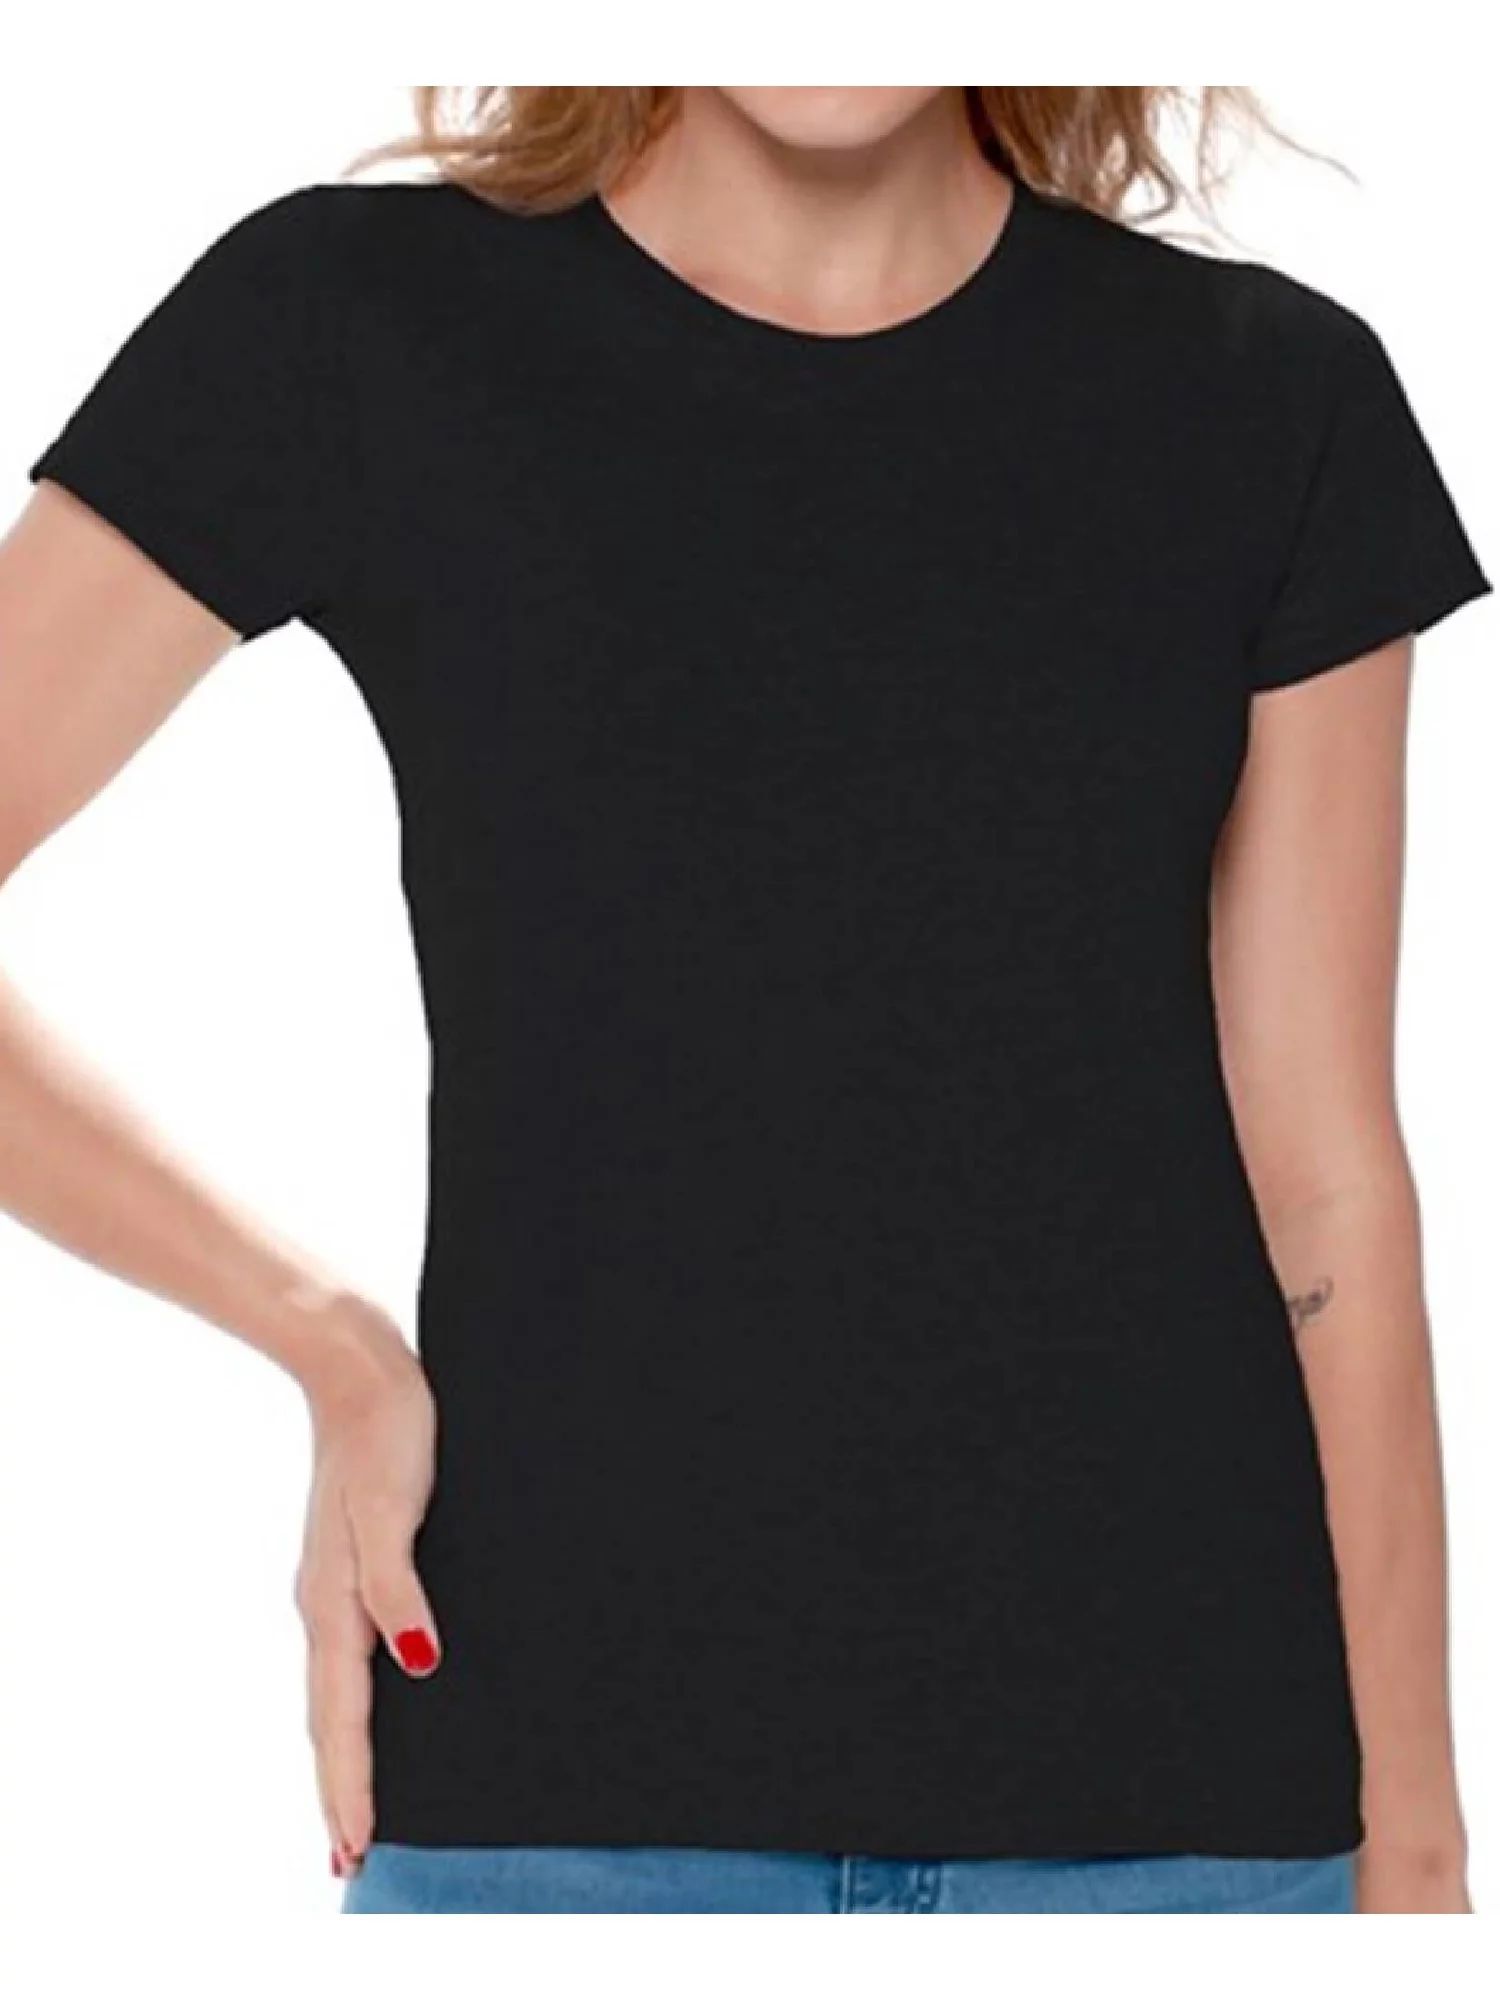 Gildan Women Cotton Value Shirts Best Classic Short Sleeve T-shirt | Walmart (US)